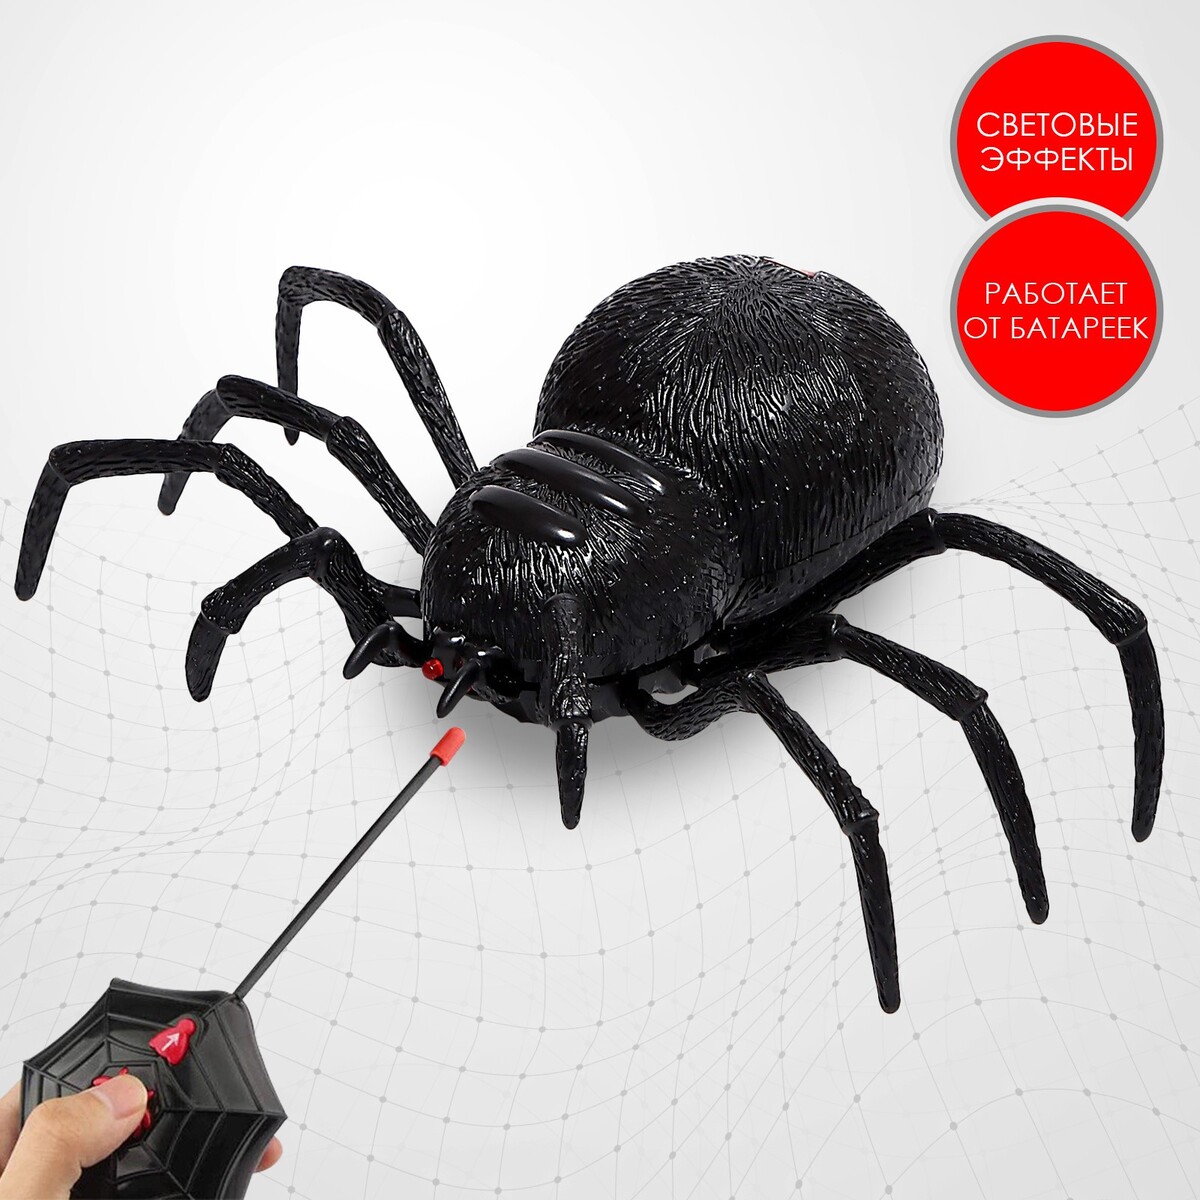 Паук радиоуправляемый интерактивная игрушка edu toys паук радиоуправляемый